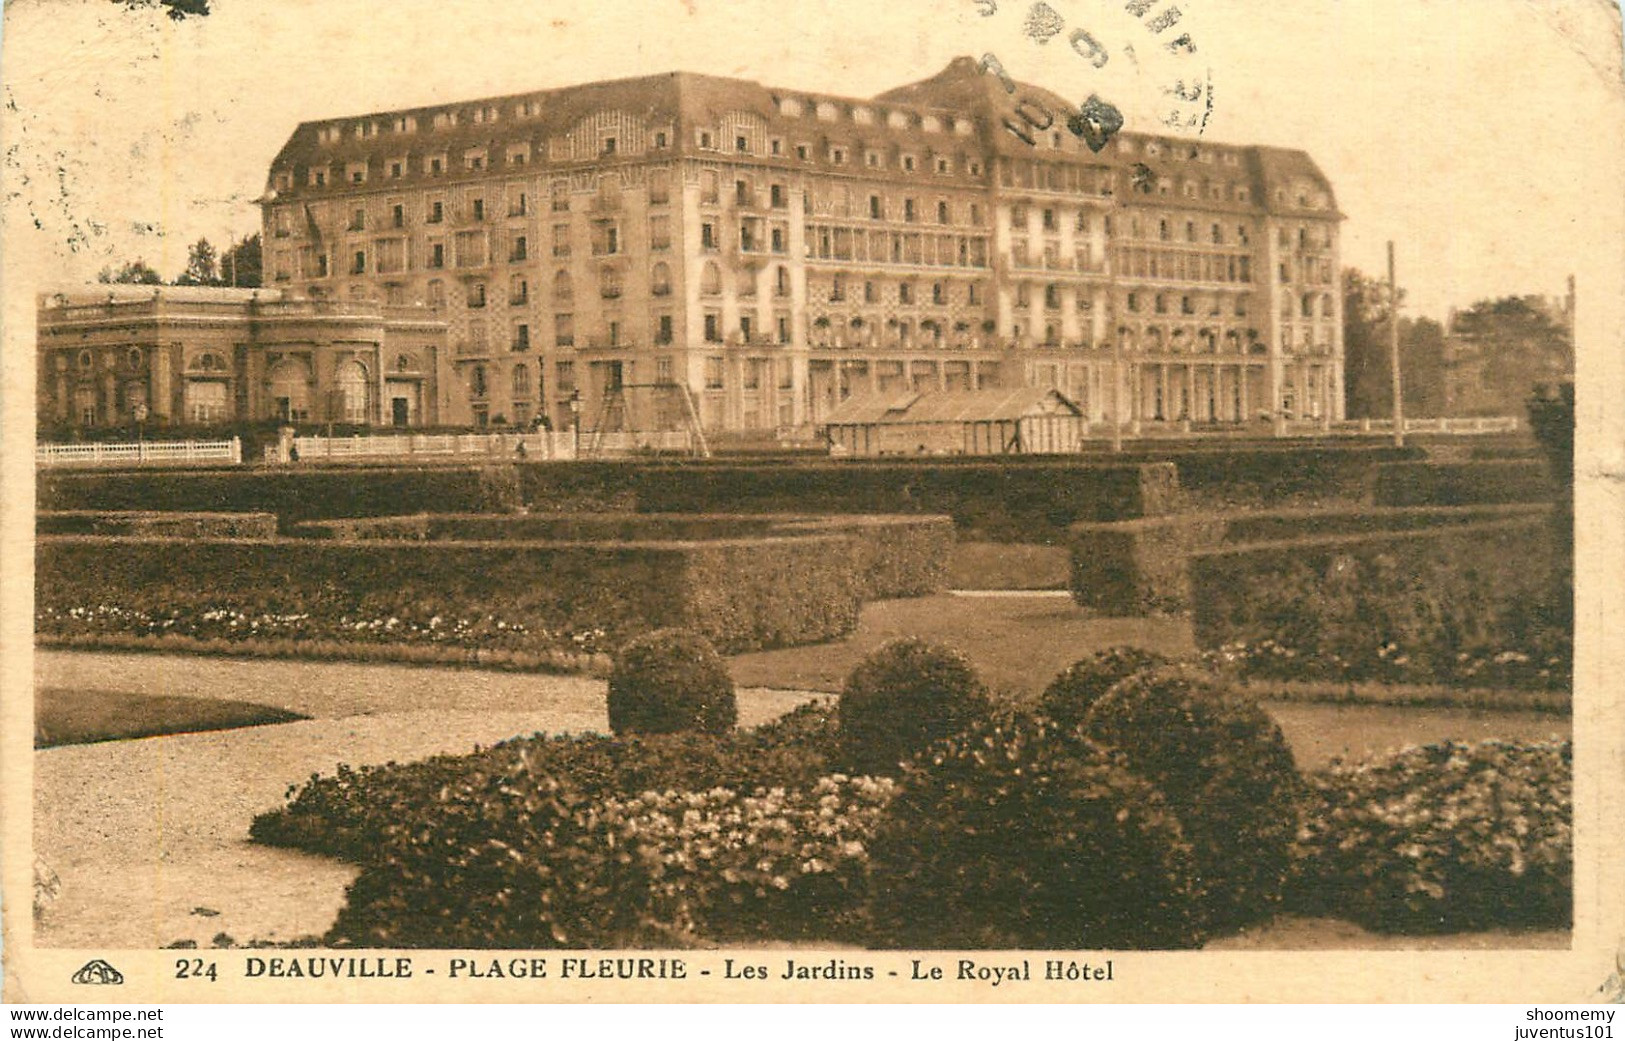 CPA Deauville-Les Jardins-Le Royal Hotel-224-Timbre          L1672 - Deauville